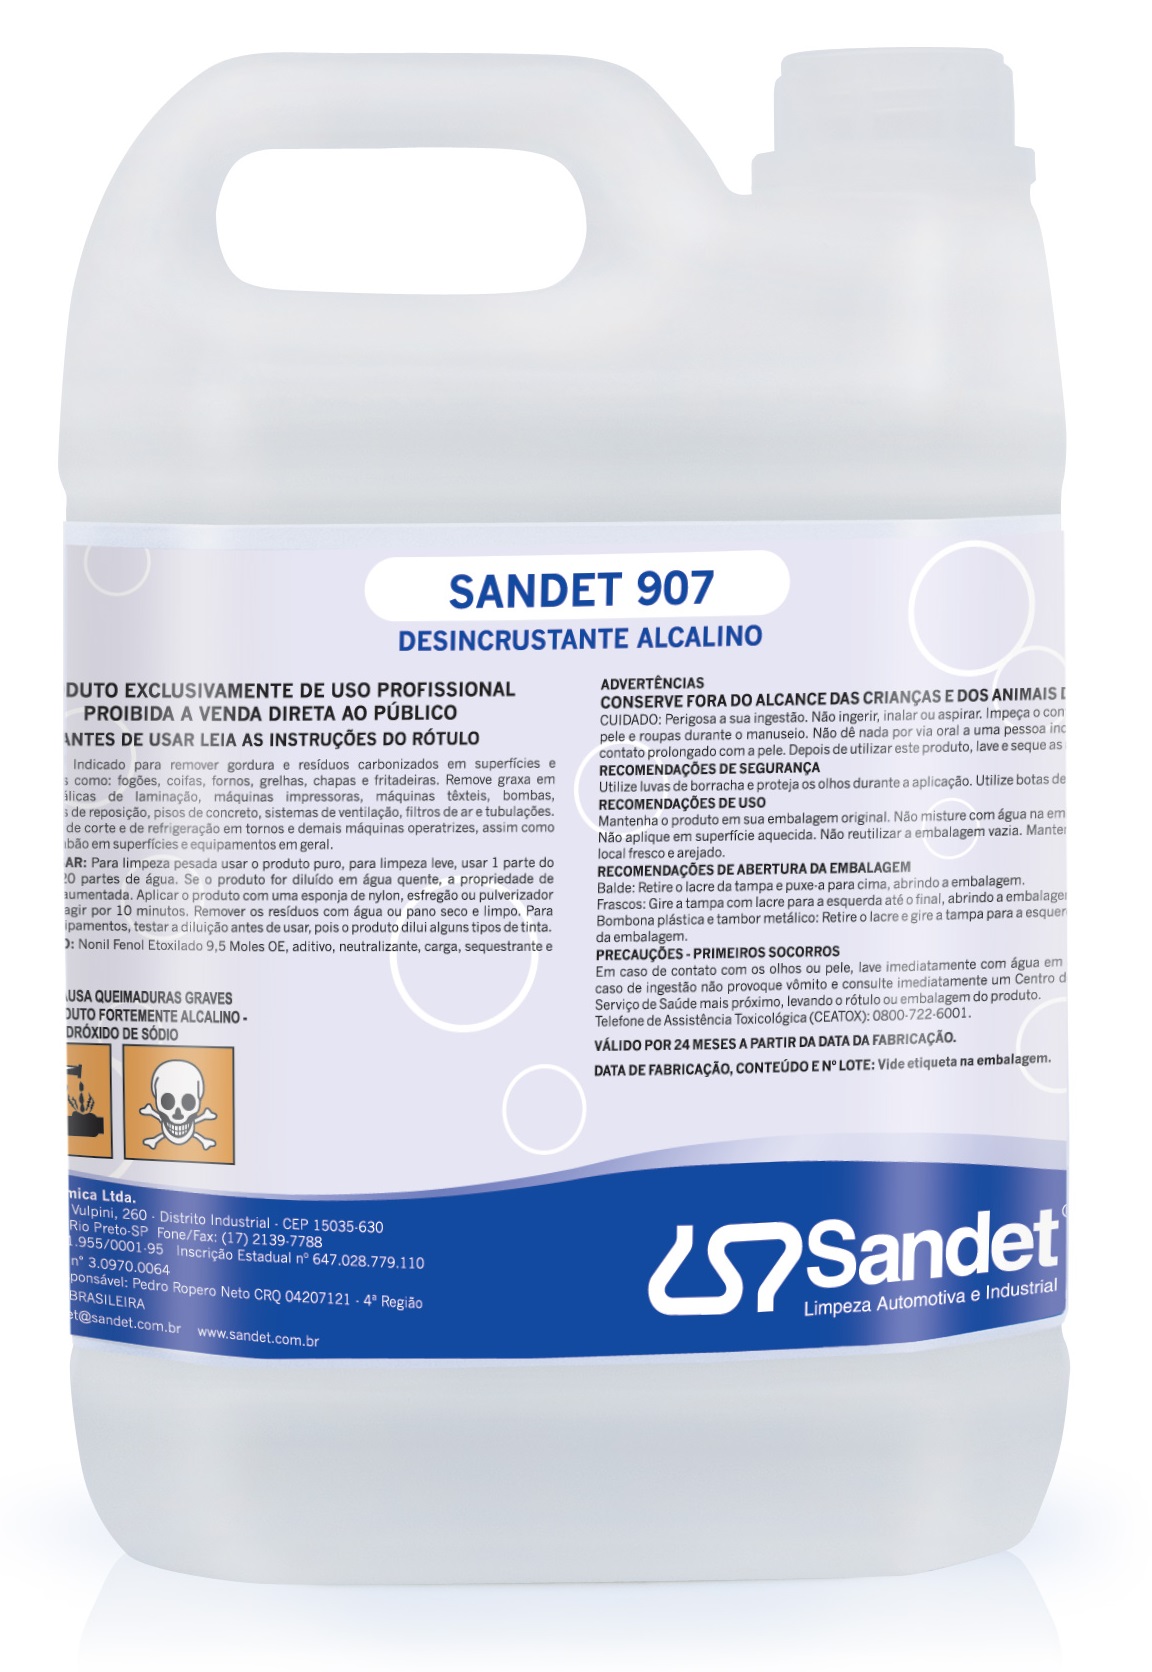 Sandet 907